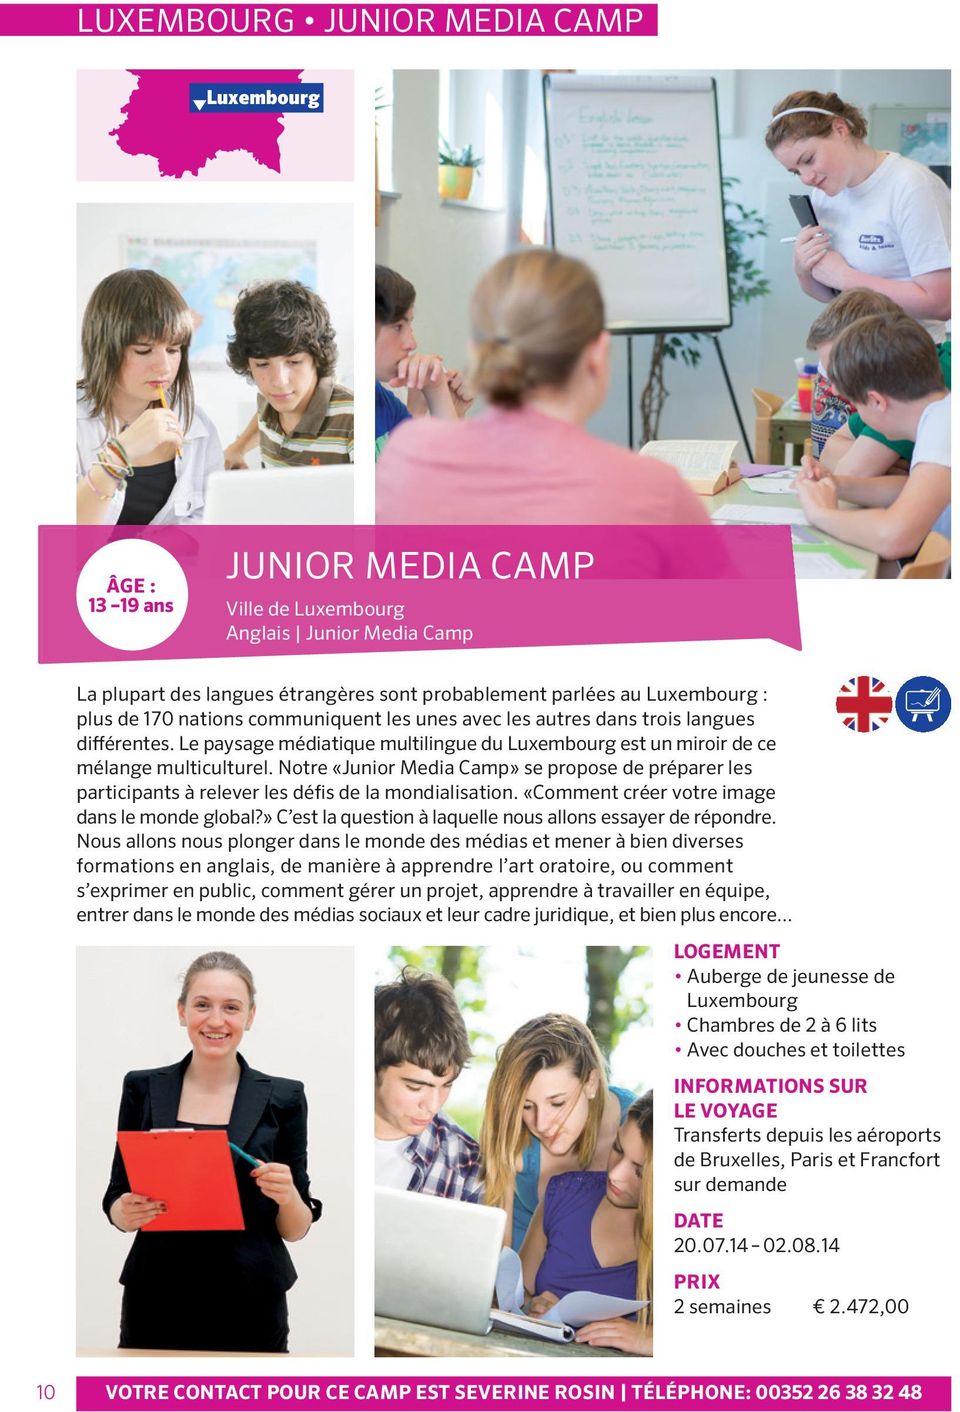 Notre «Junior Media camp» se propose de préparer les participants à relever les défis de la mondialisation. «comment créer votre image dans le monde global?